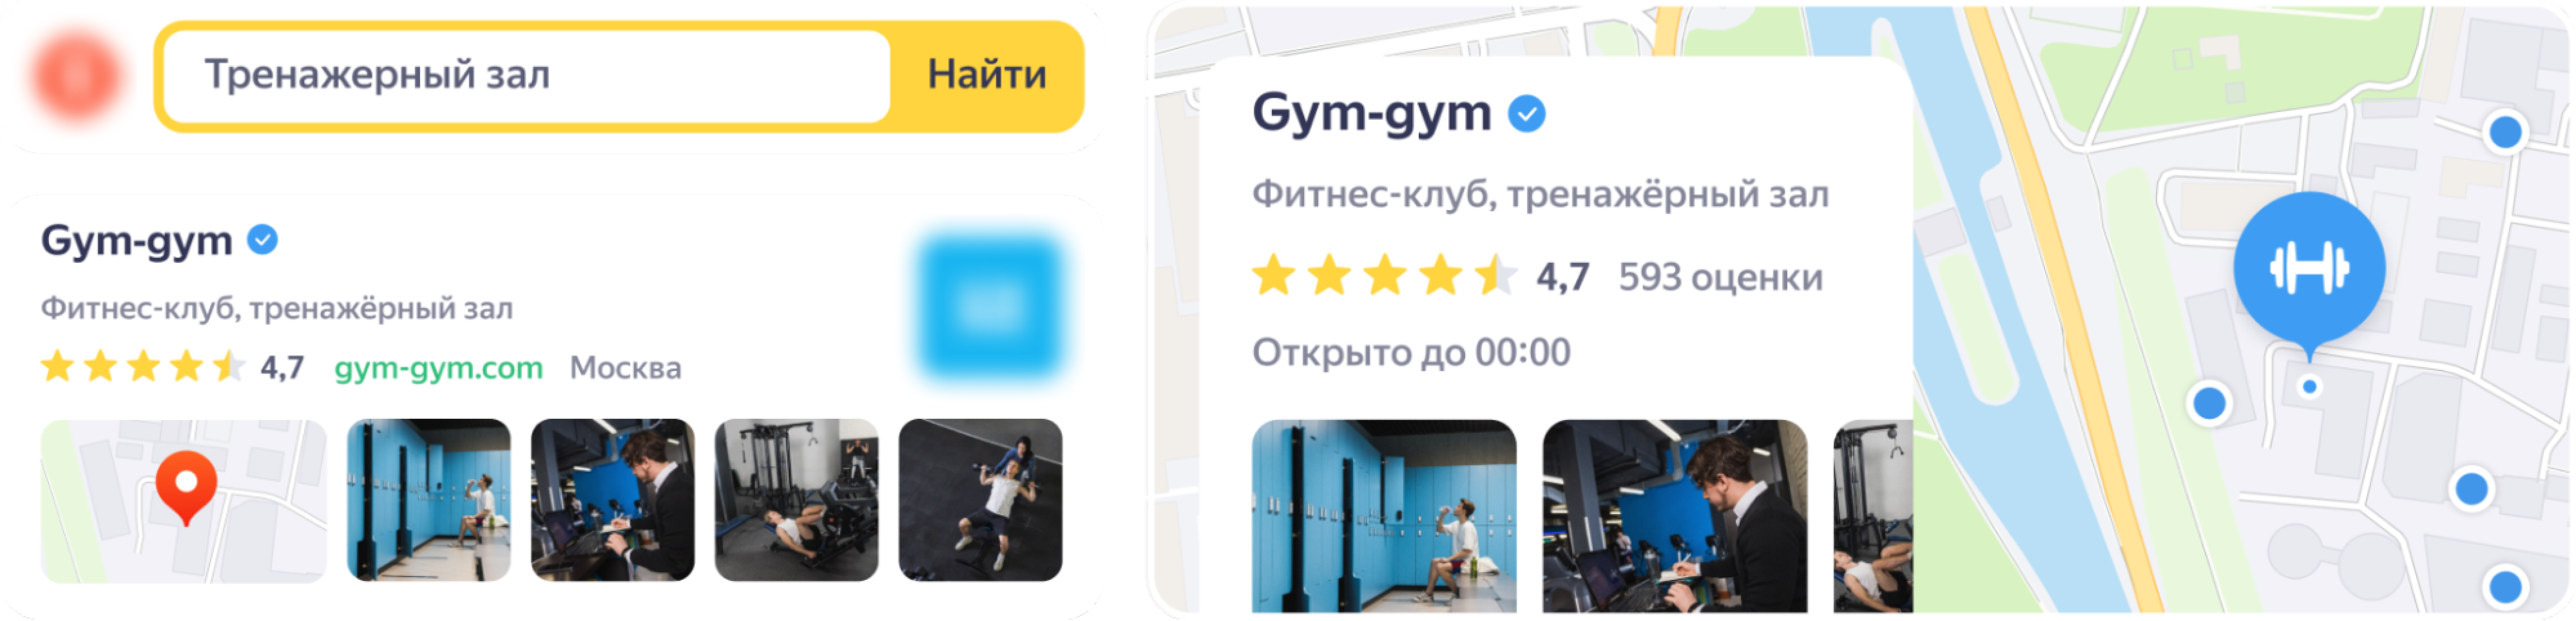 Как добавить организацию на Яндекс Карты